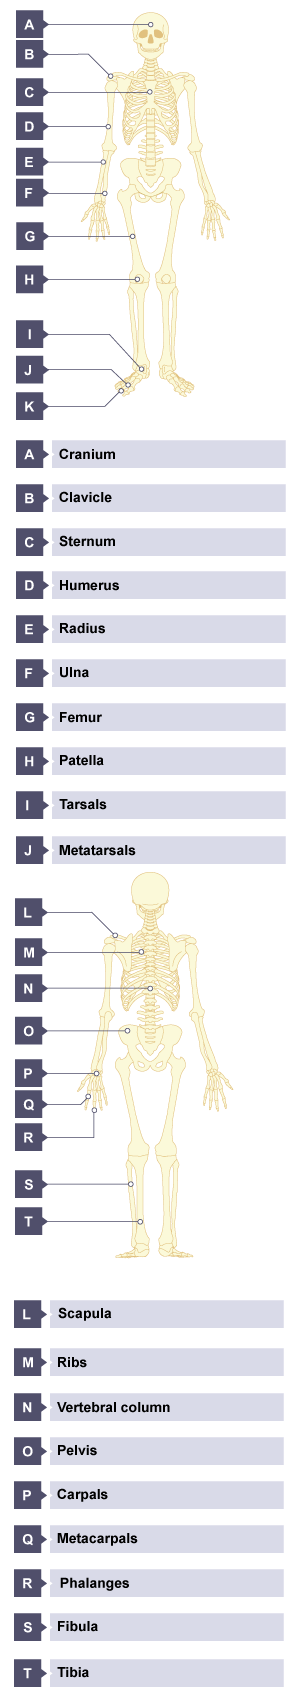 Human skeleton, with the bones labelled: cranium, clavicle, sternum, humerus, radius, ulna, femur, patella, tarsals, metatarsals, phalanges.